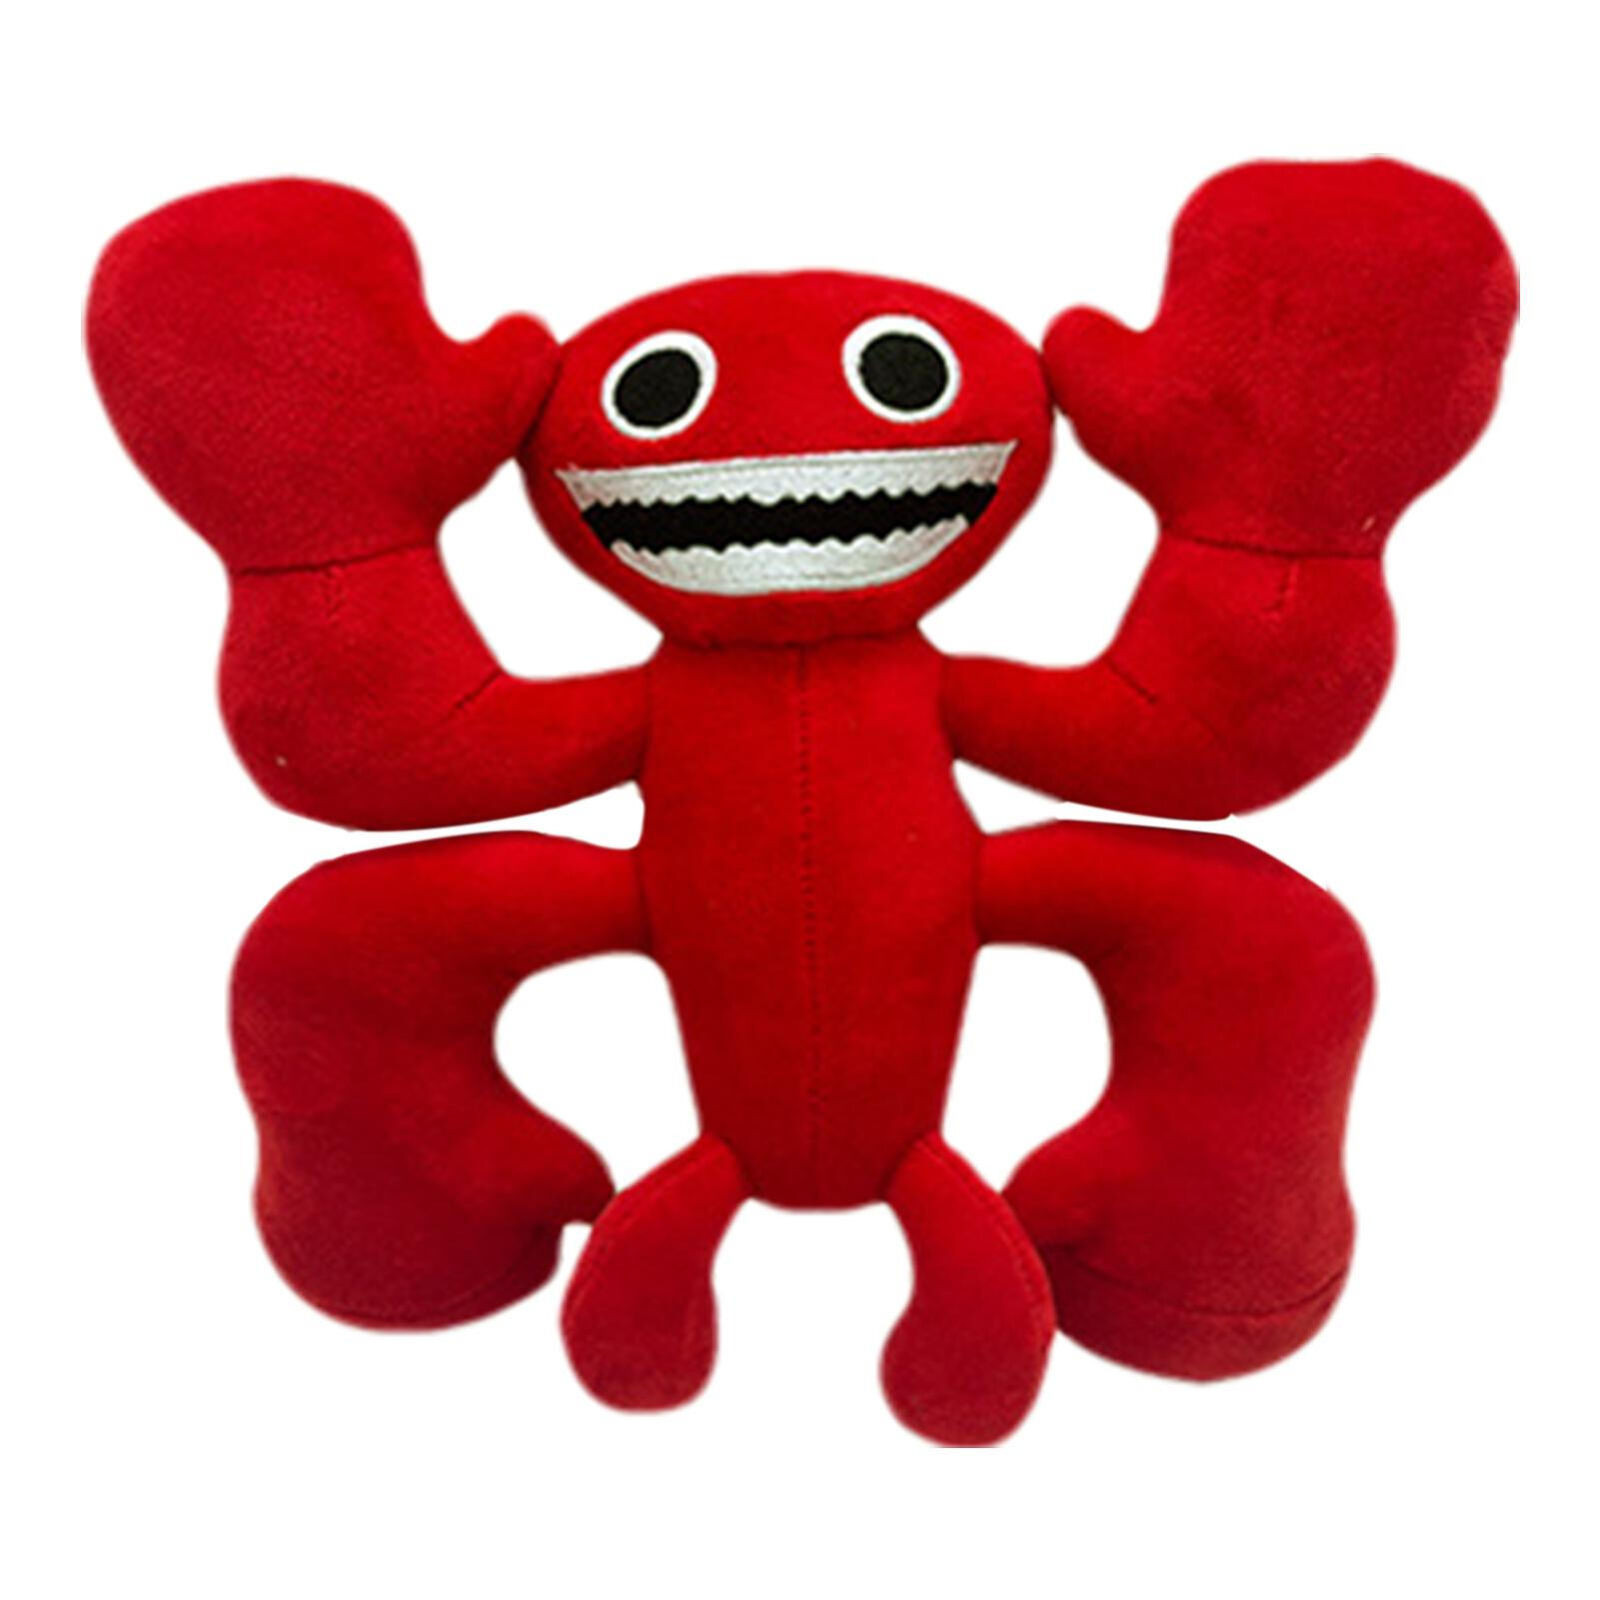 Garten Of Banban Red Lobster Banban Plush Toy